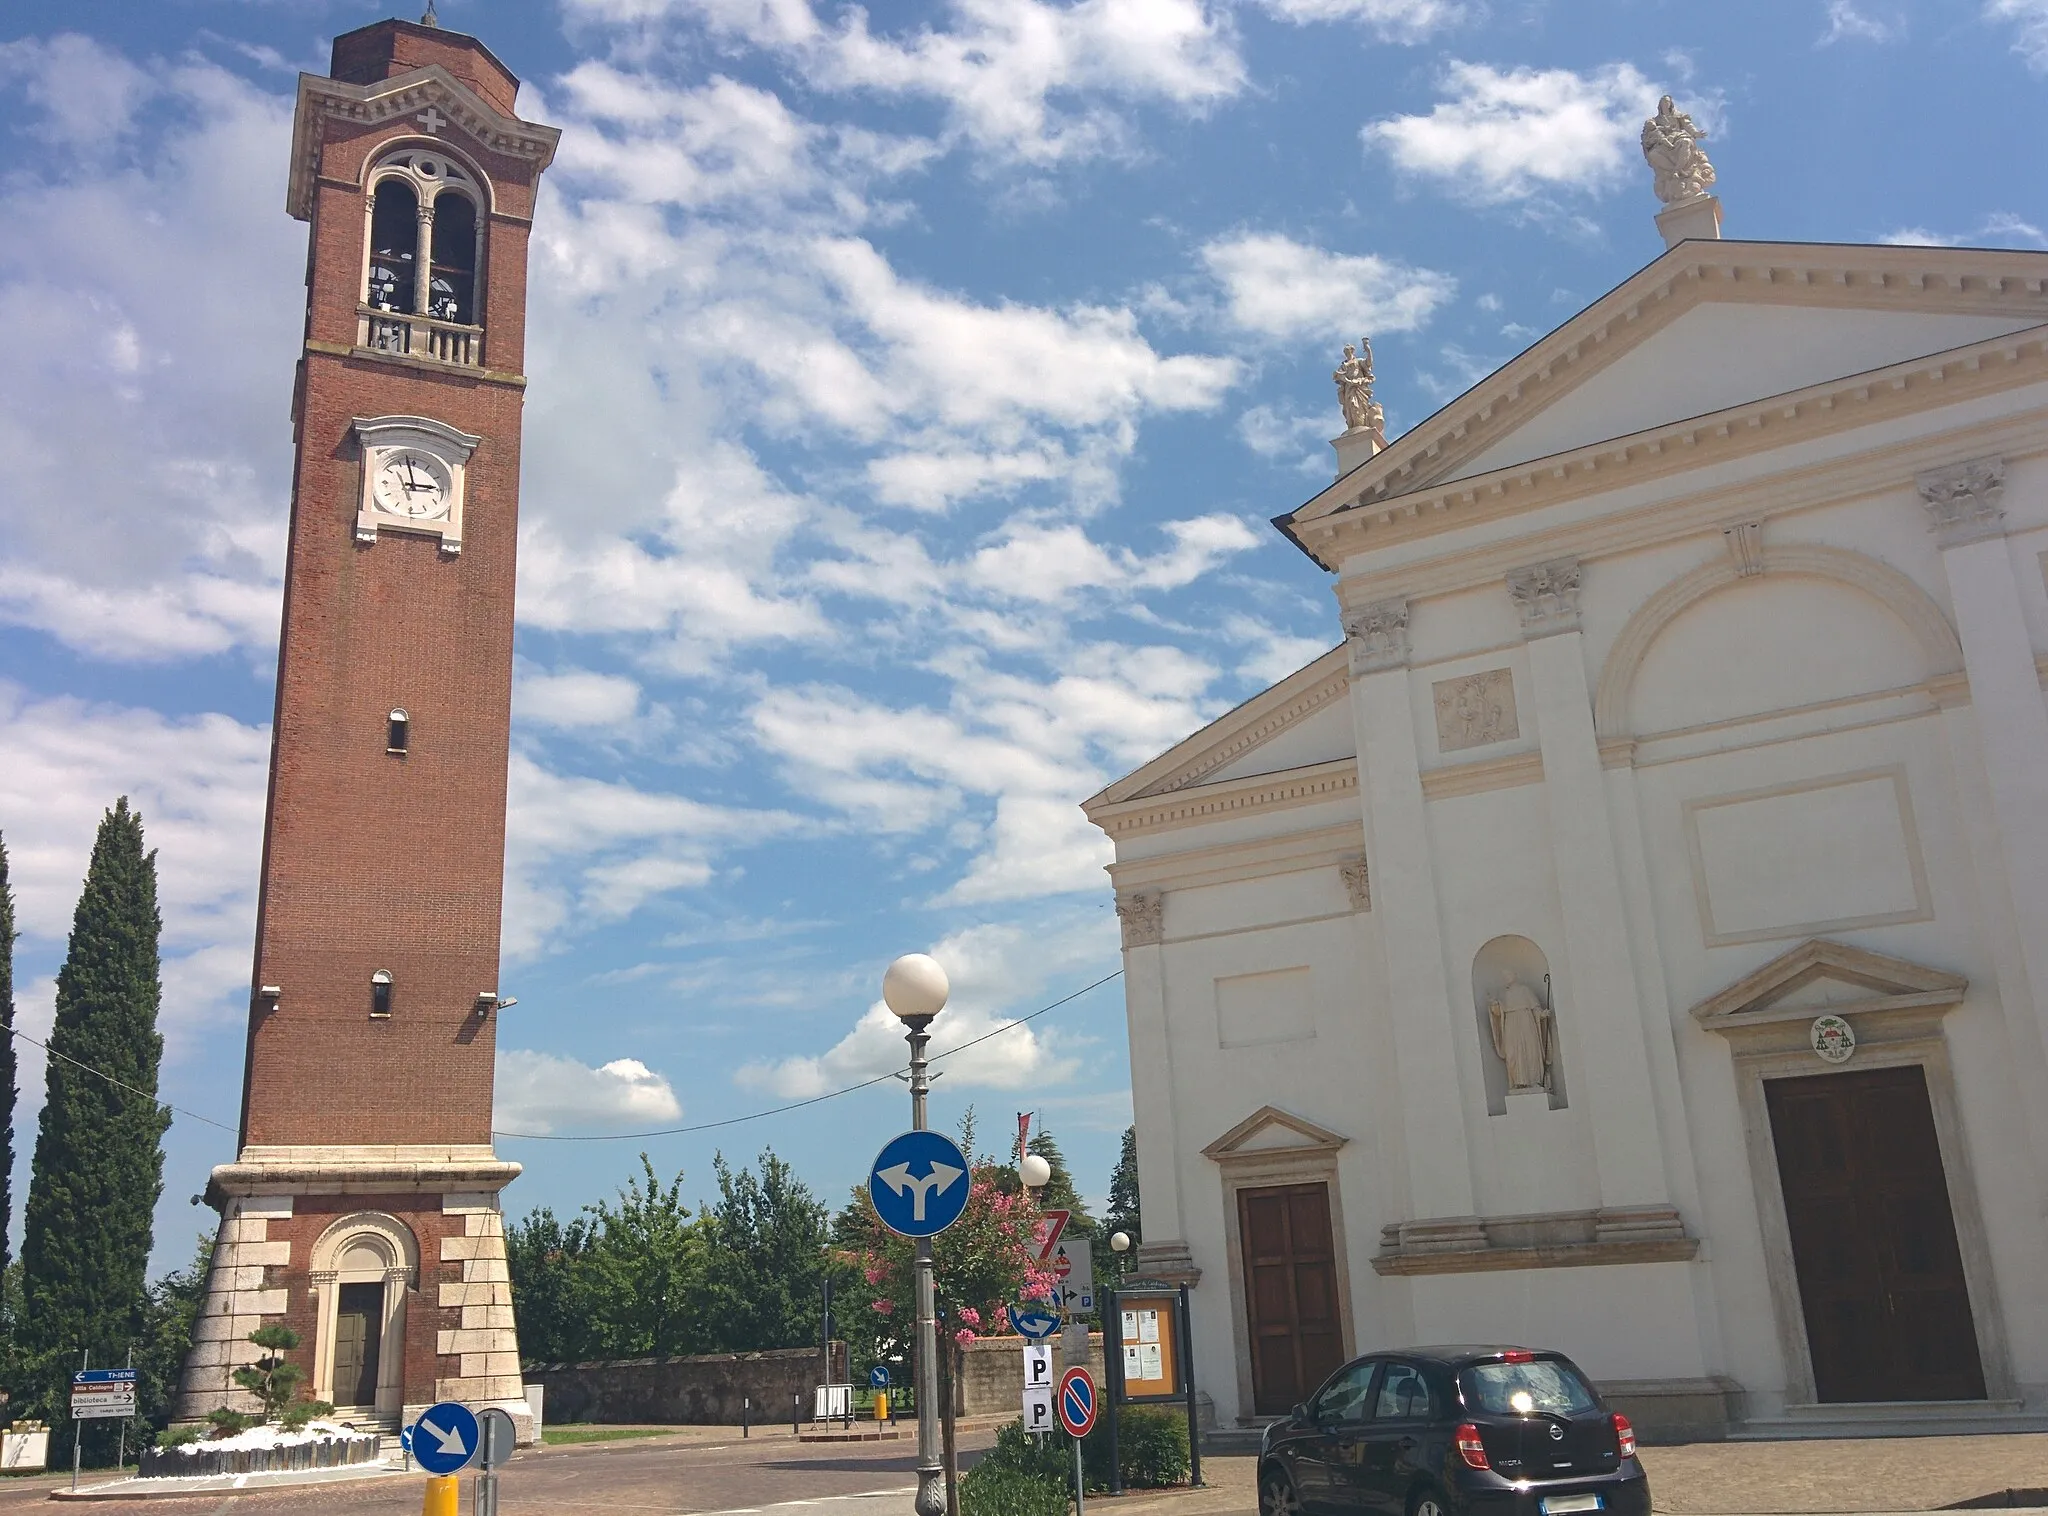 Photo showing: Campanile e facciata della chiesa parrocchiale di Caldogno, in provincia di Vicenza.